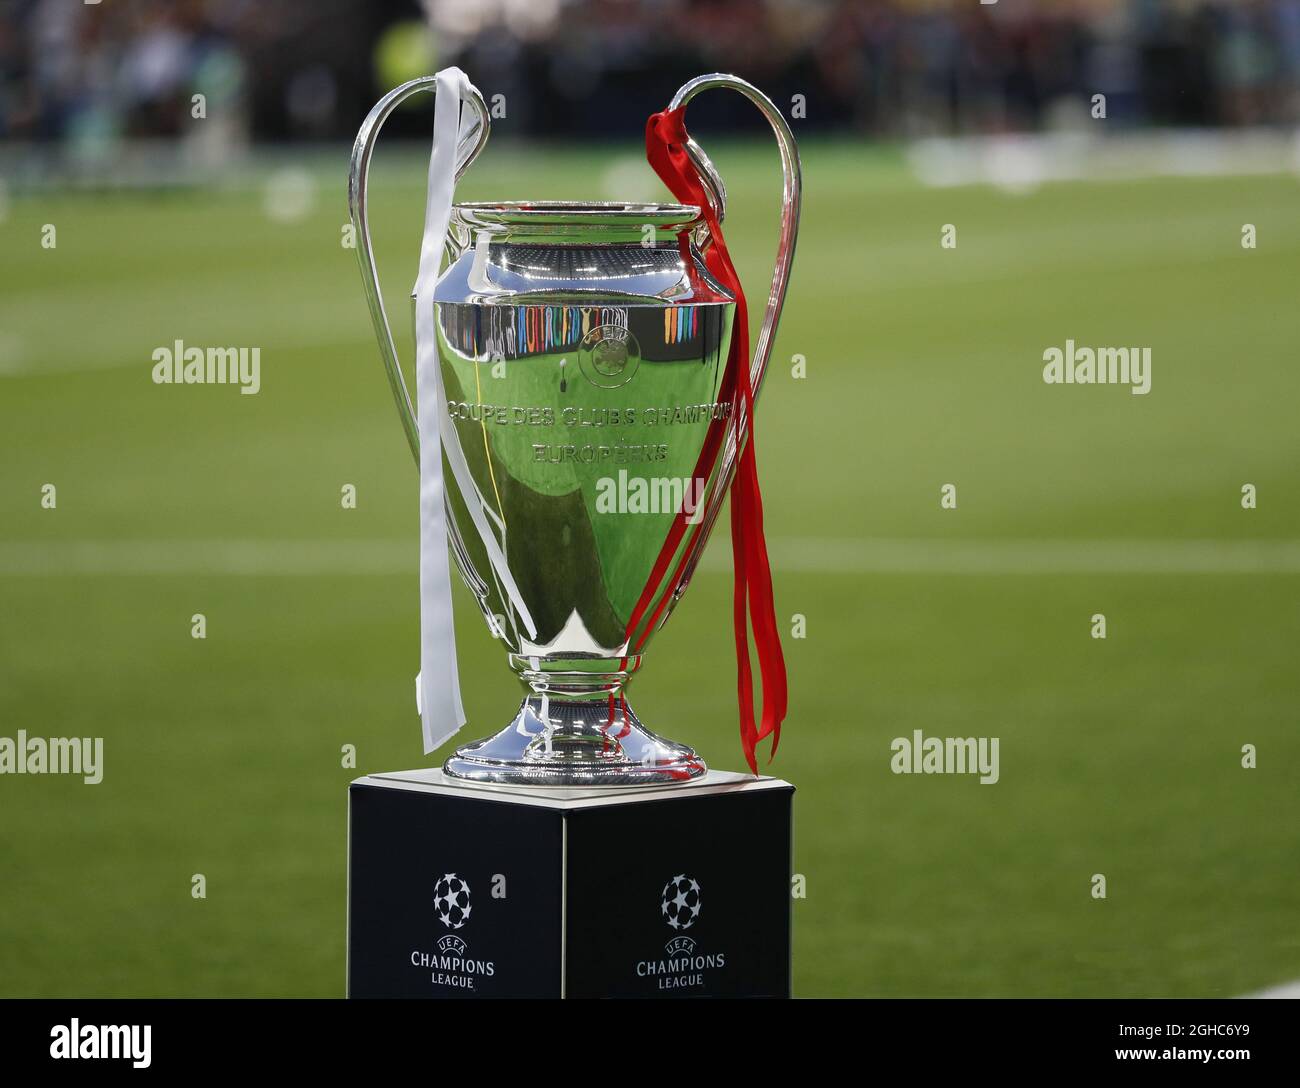 Der UEFA Champions League Cup wurde vor dem UEFA Champions League-Finale im  NSK Olimpiyskiy Stadium in Kiew ausgestellt. Bild Datum 26. Mai 2018.  Bildnachweis sollte lauten: David Klein/Sportimage via PA Images  Stockfotografie -